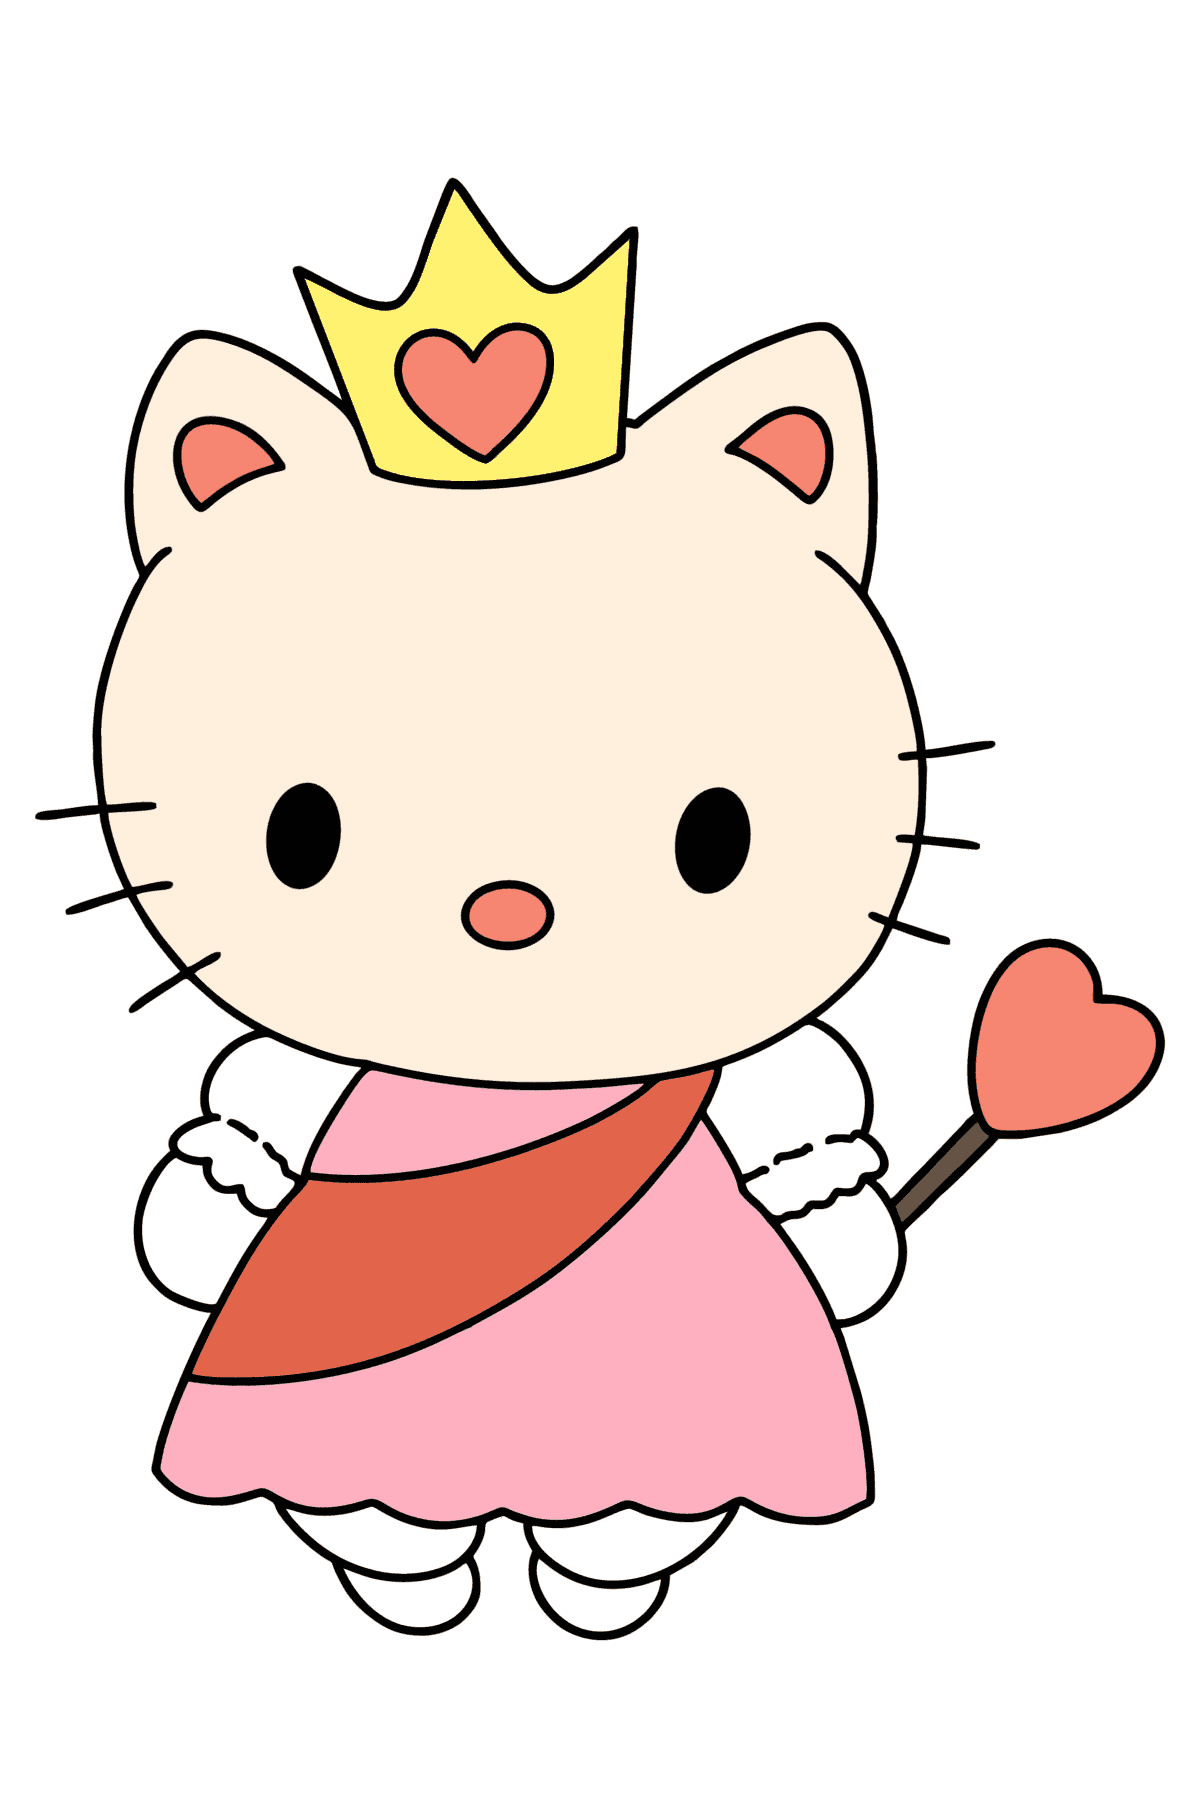 Boyama sayfası Hello Kitty bir prenses - Boyamalar çocuklar için